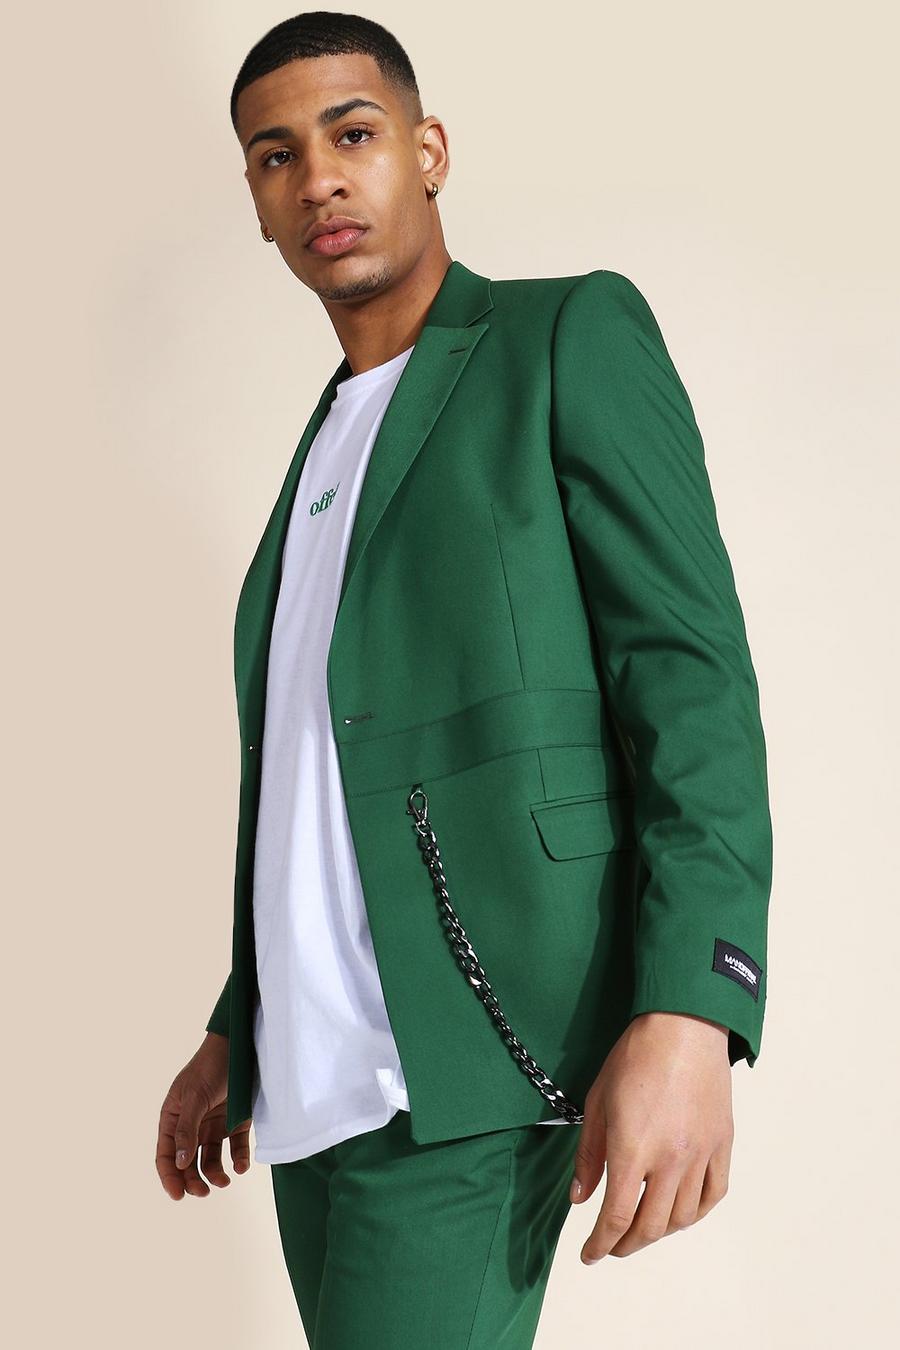 ירוק כהה verde ז'קט חליפה סקיני עם דשים כפולים ושרשרת